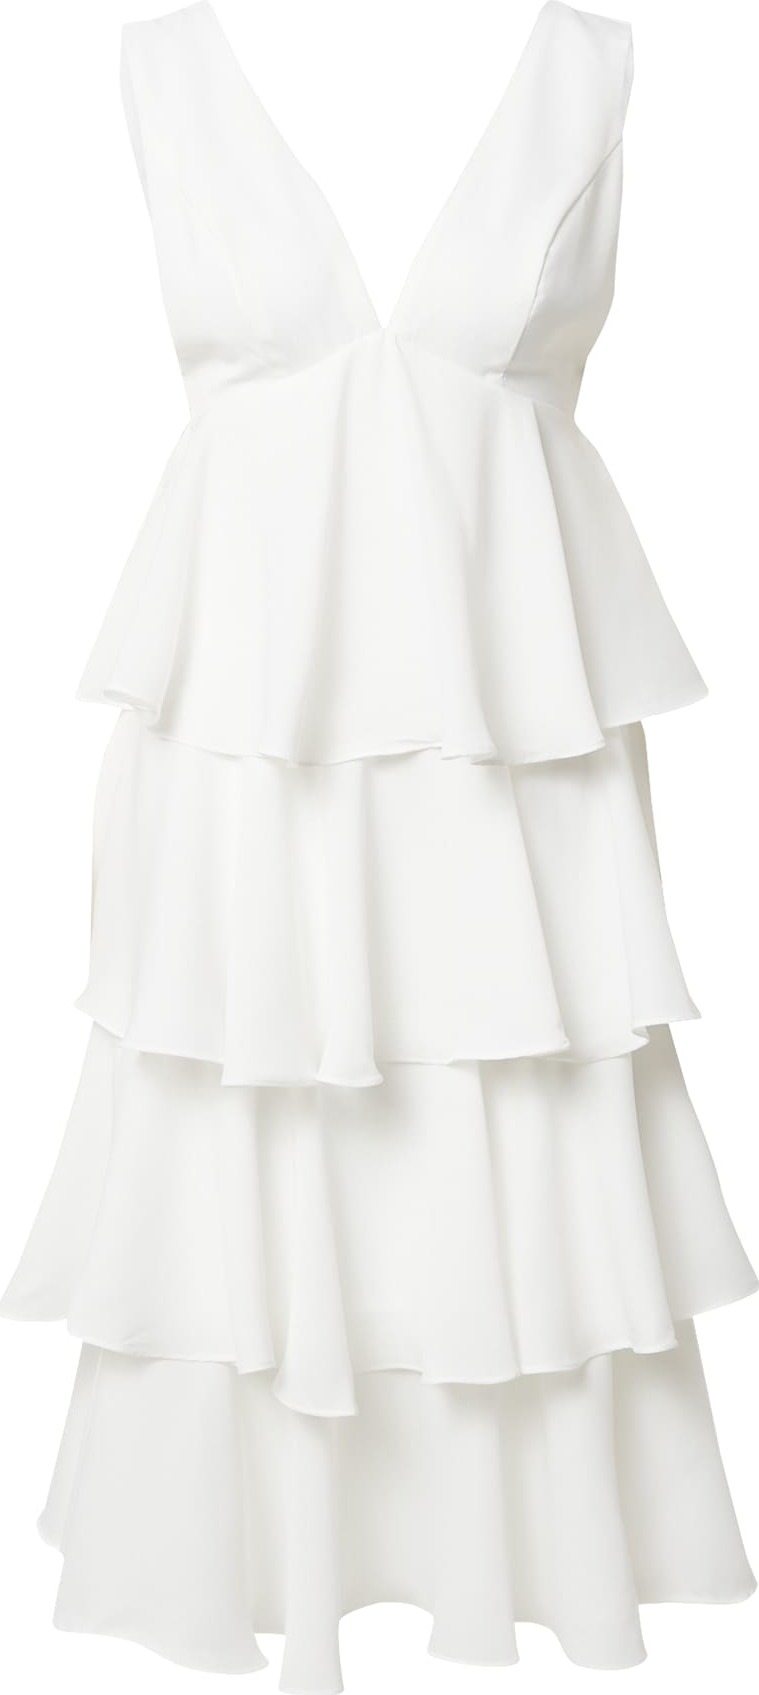 Chi Chi London Koktejlové šaty bílá